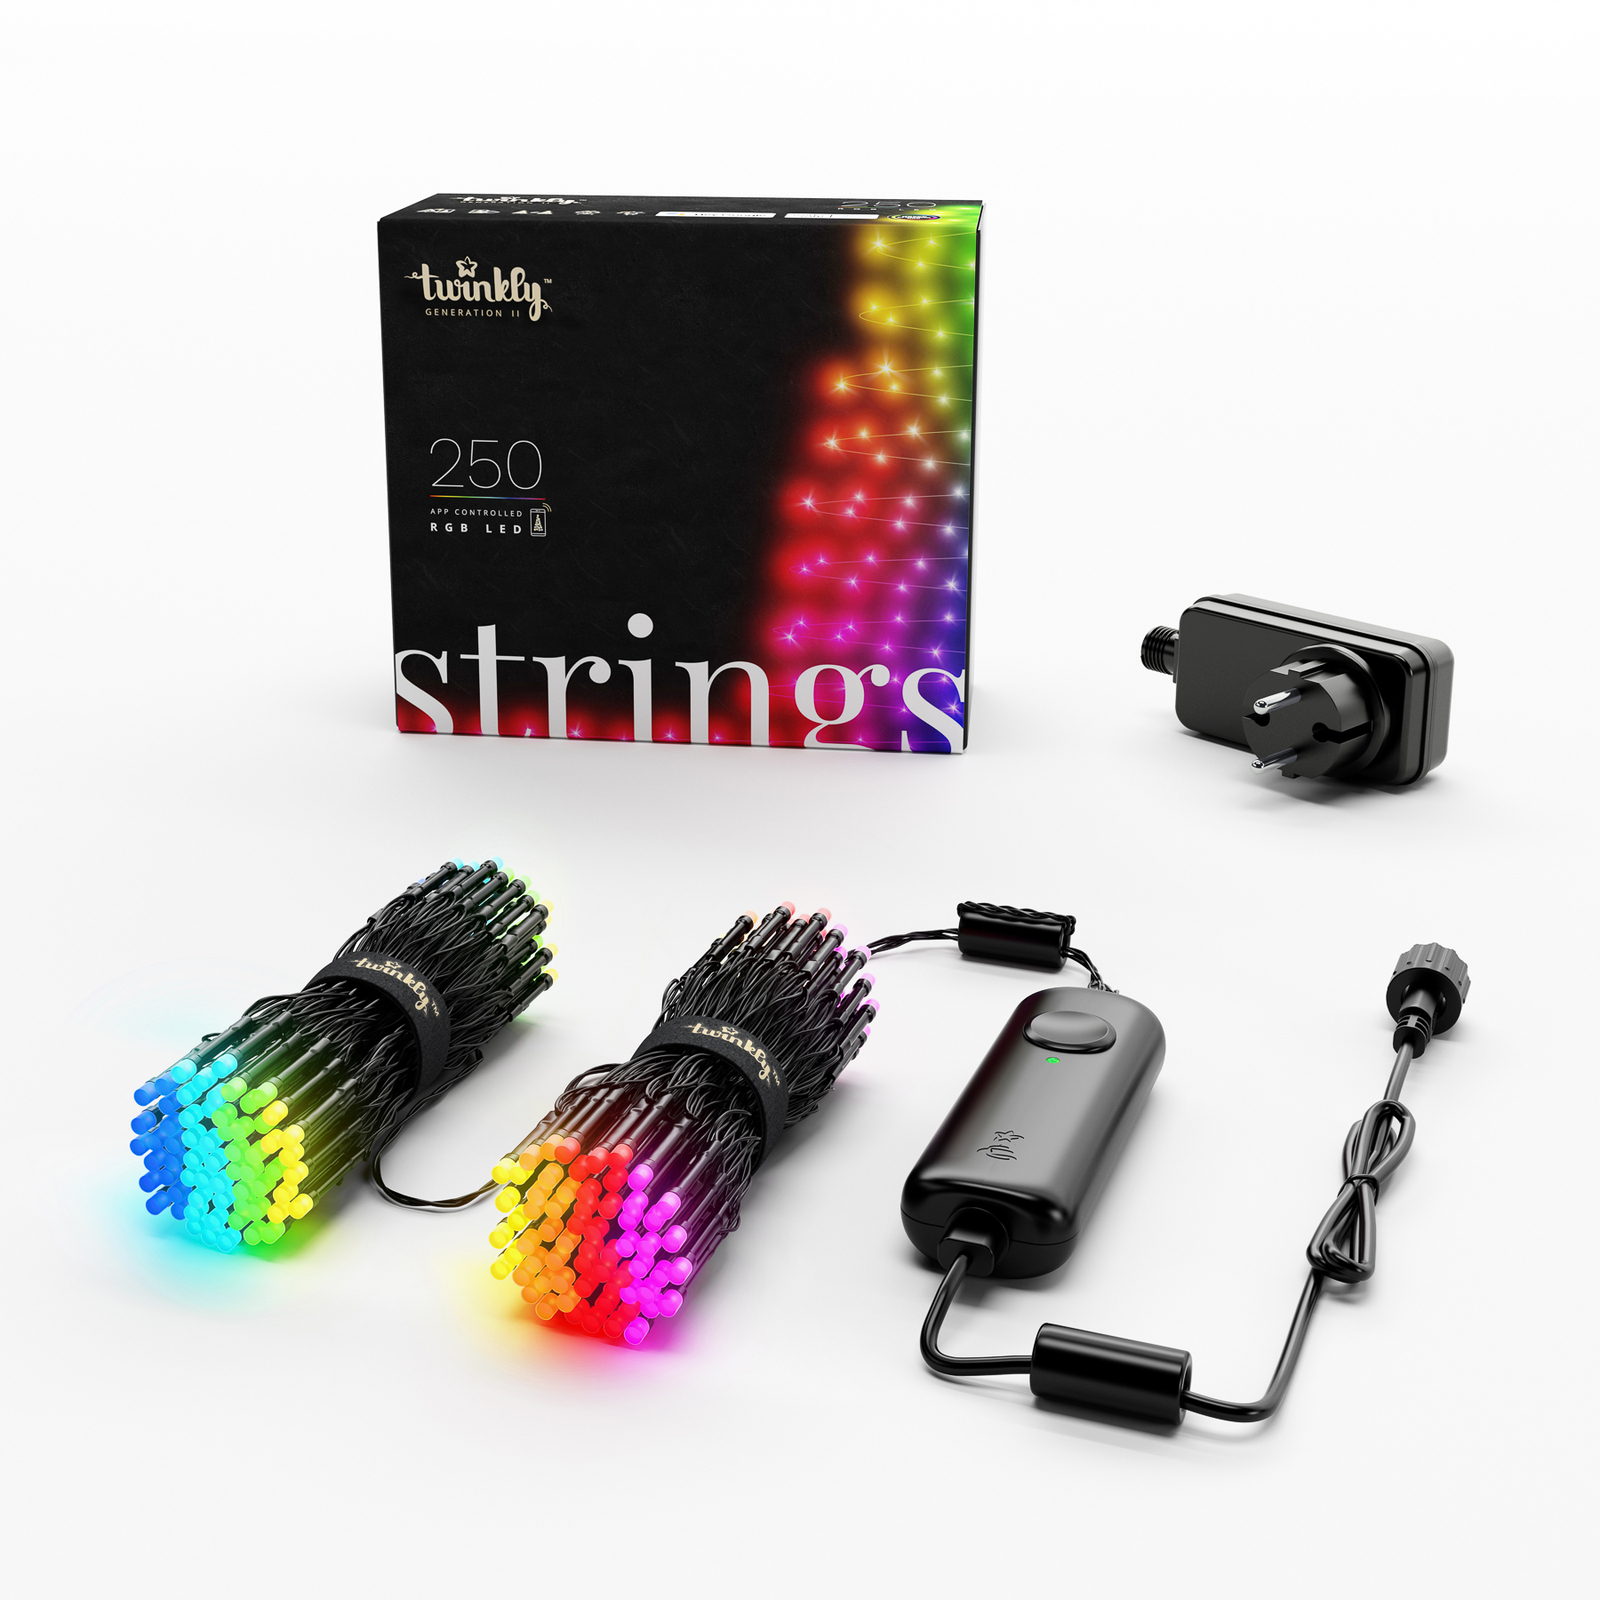 Lichterkette Twinkly RGB, schwarz, 250-flammig 20m